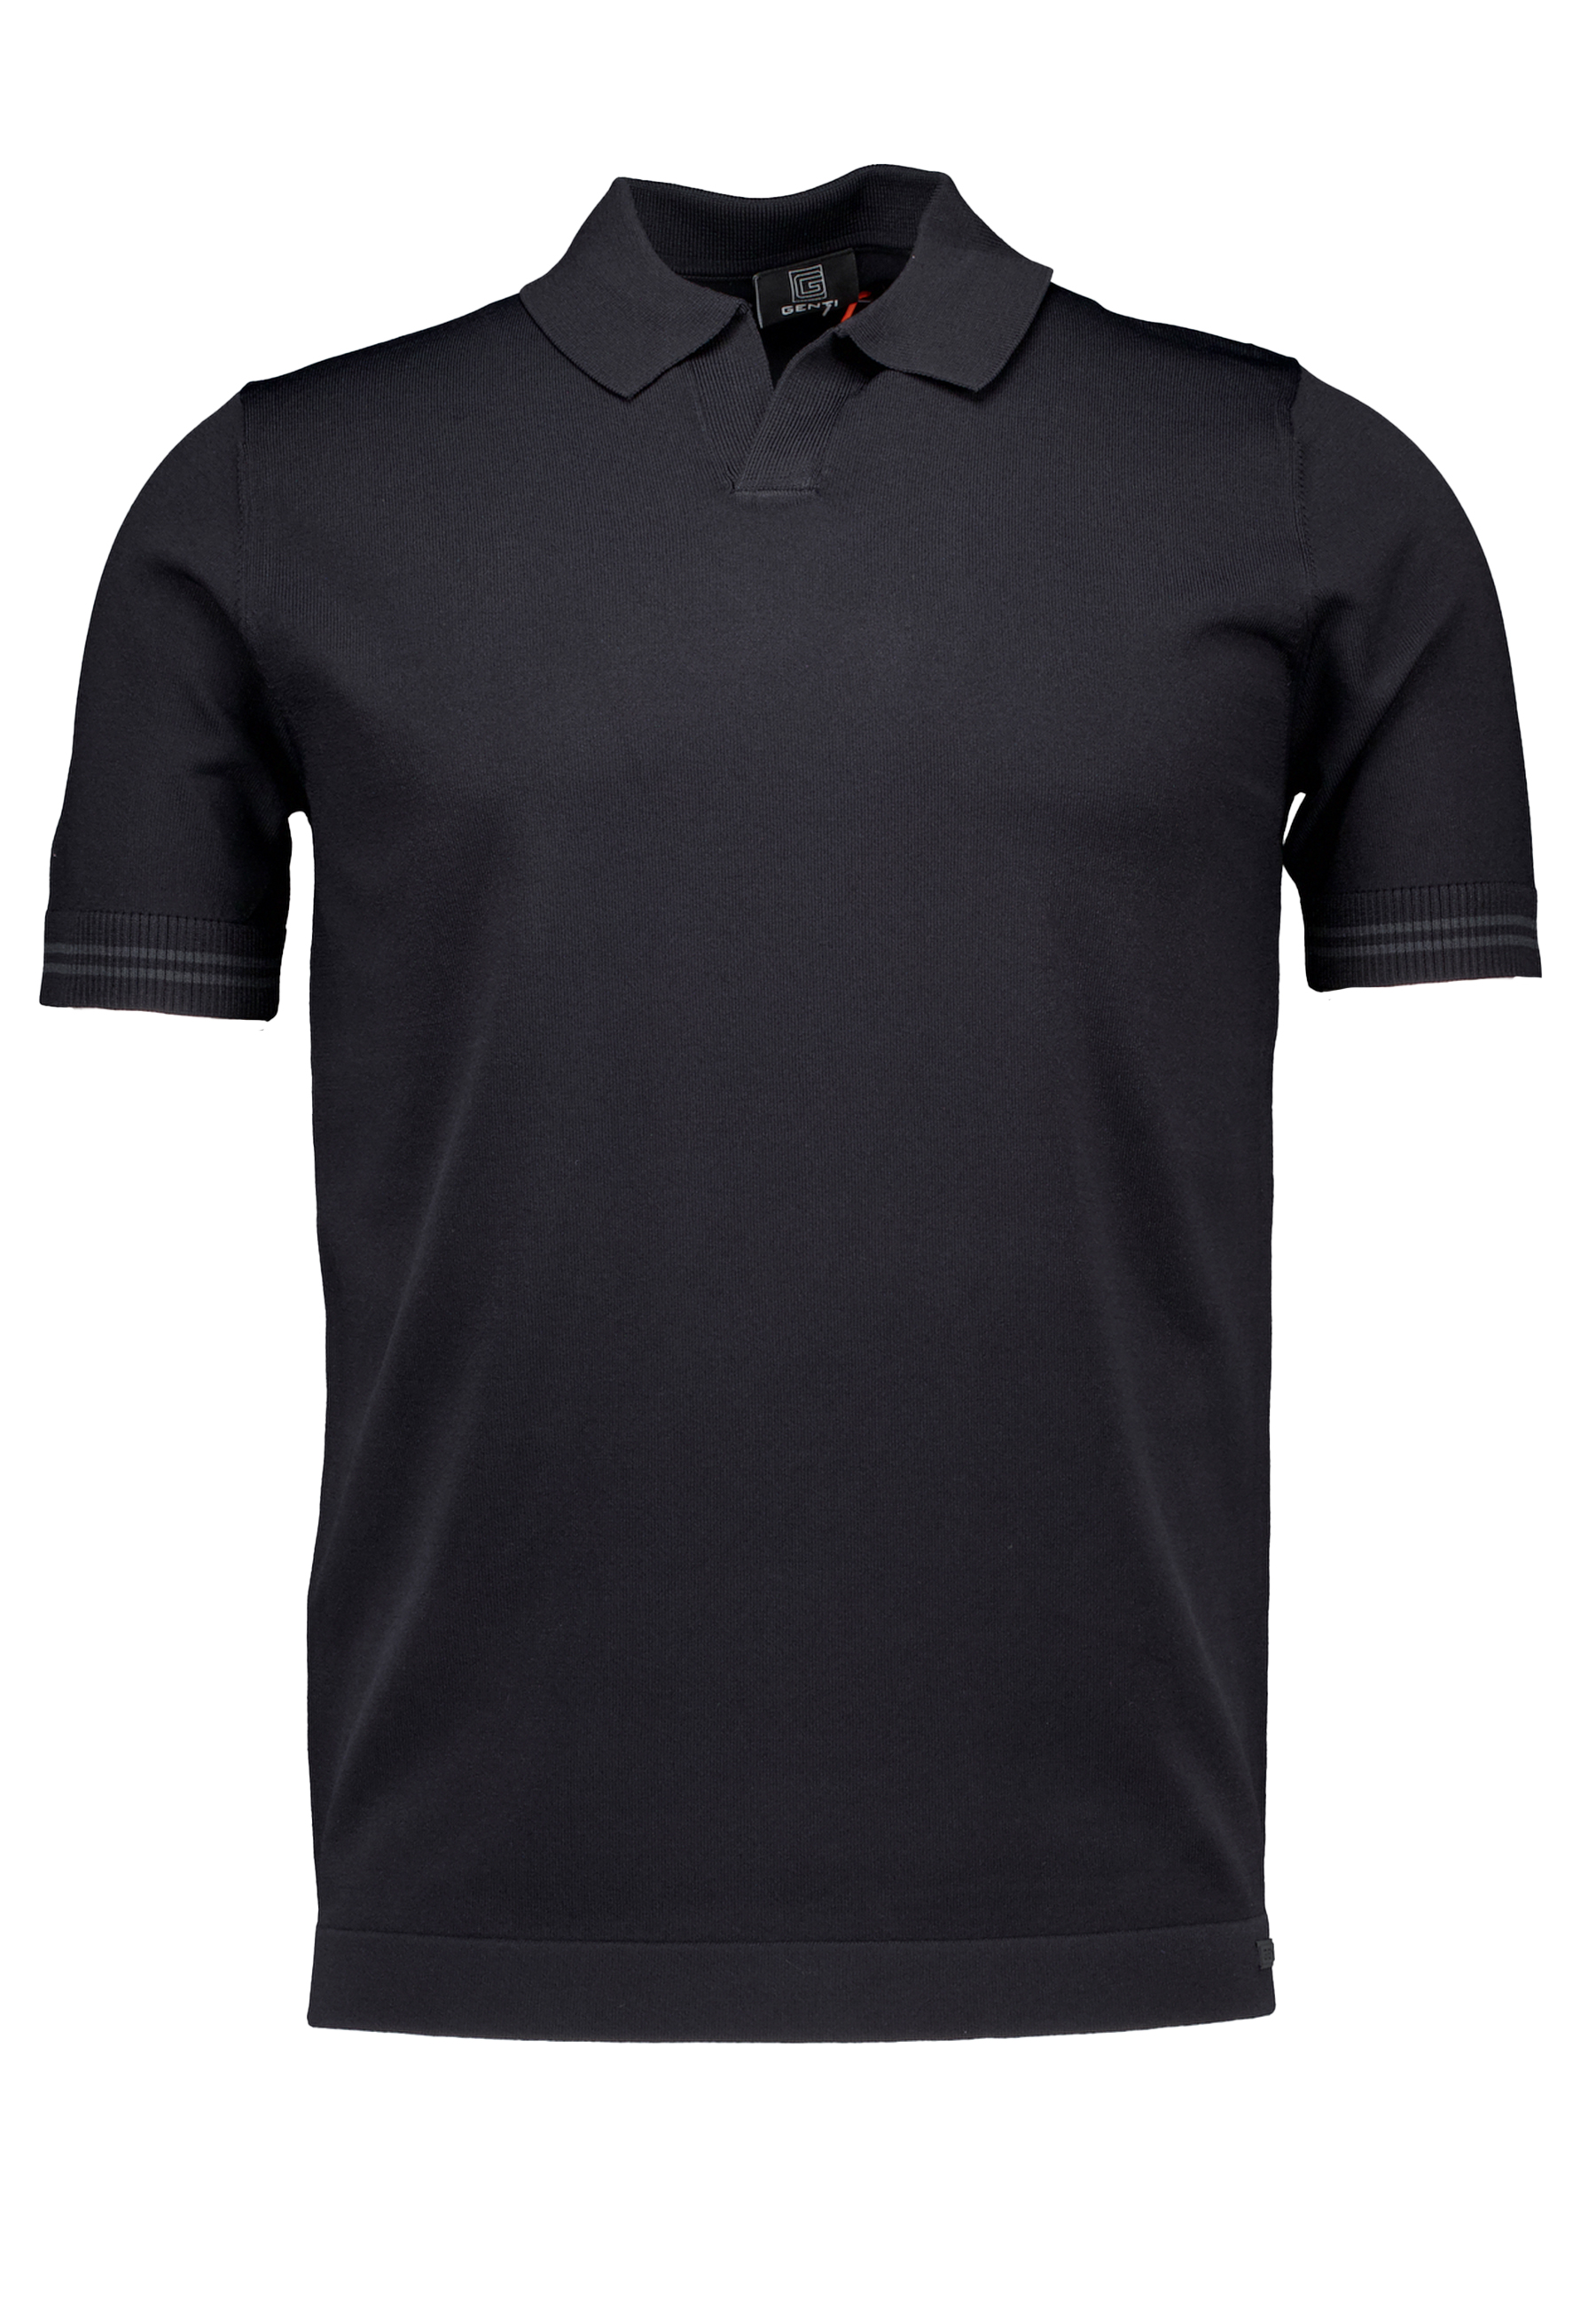 Shirt Zwart No buttons ss polos zwart